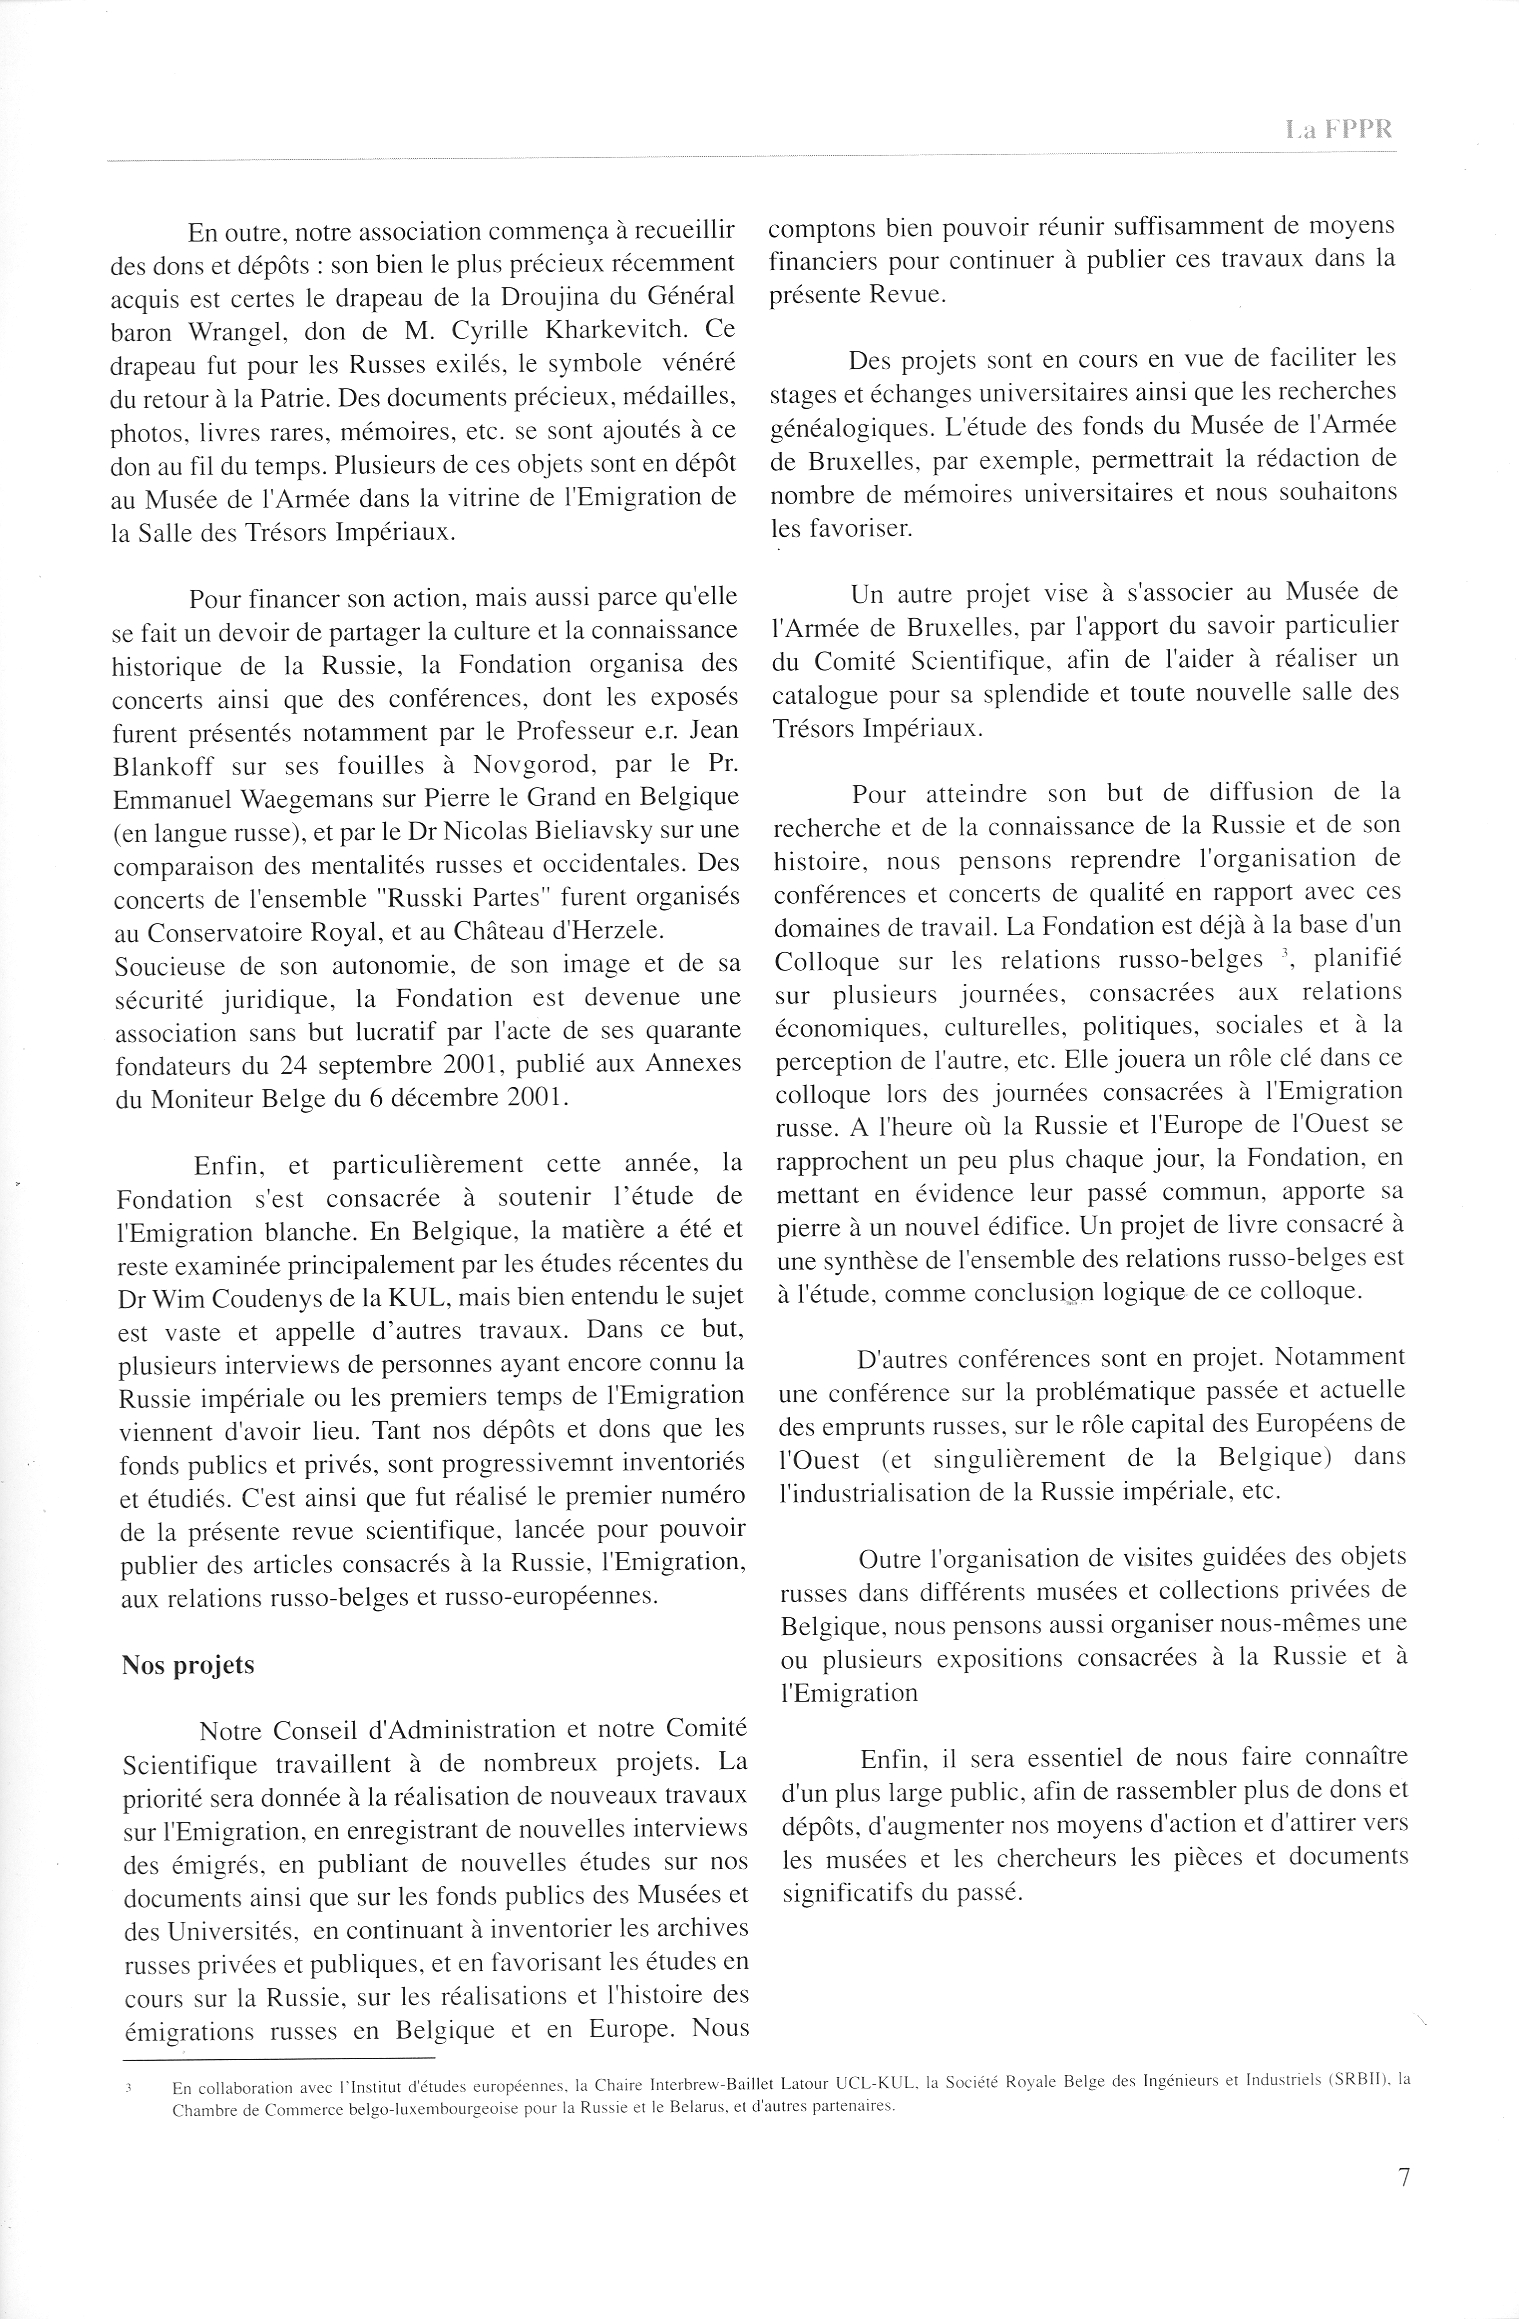 FPPR Revue 01 2002 09. Page 07. La FPPR, Fondation pour la Préservation du Patrimoine Russe dans l|Union Européenne asbl - son histoire - ses buts - ses projets concrets